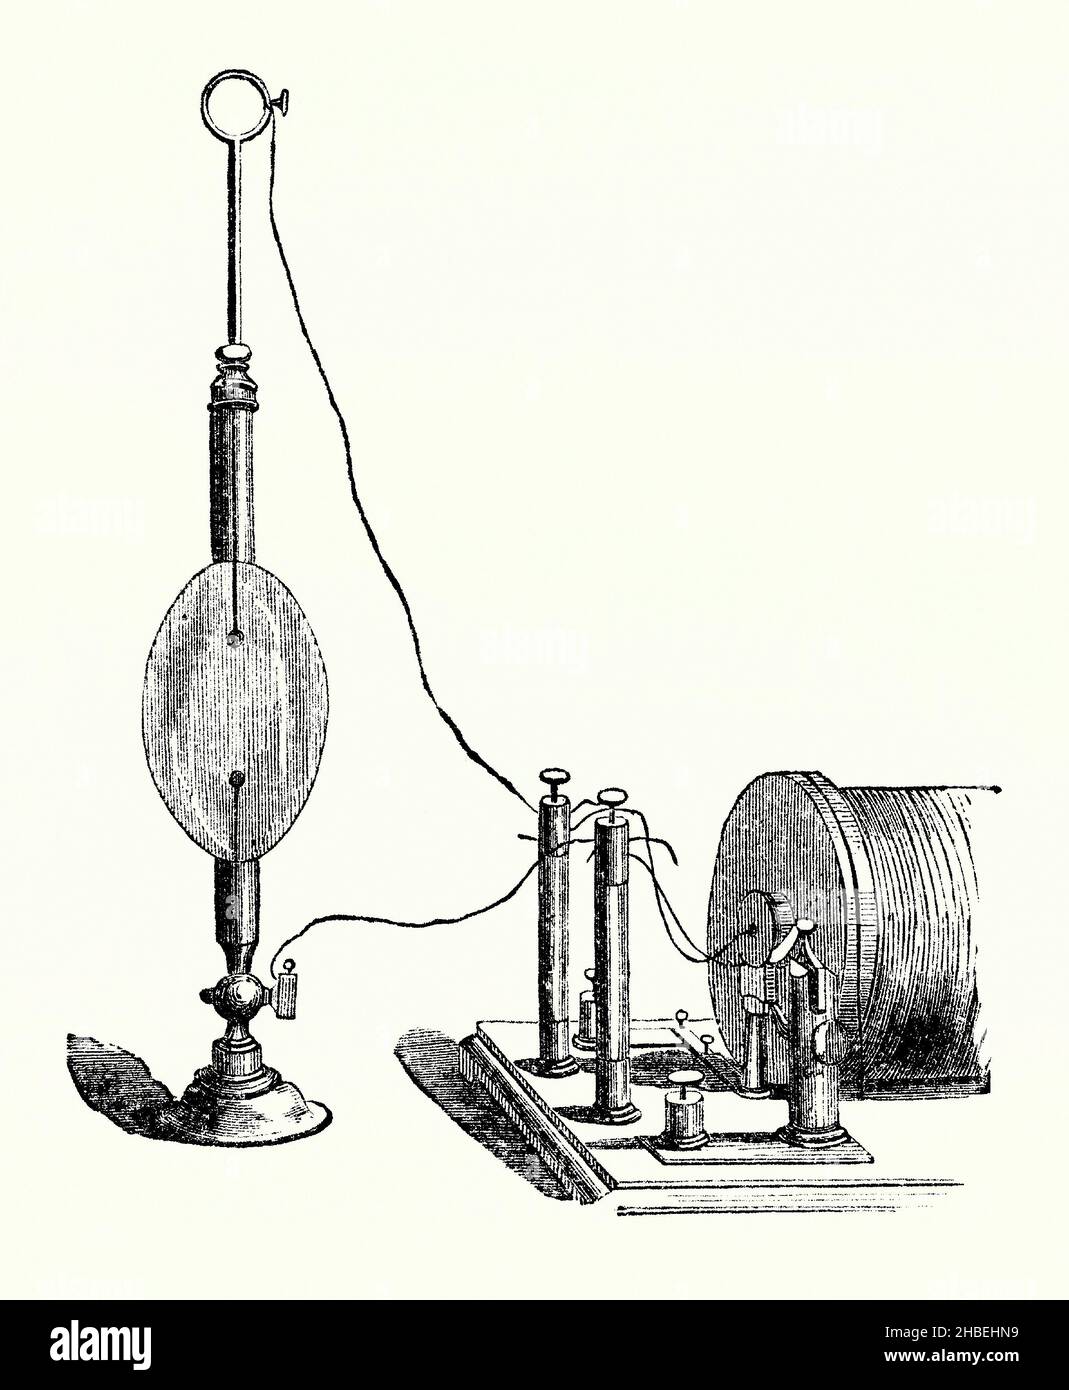 Eine alte Gravur einer Maschine zur Beobachtung der elektrischen Entladung in rarefied Luft in viktorianischen Zeiten. Es stammt aus einem Buch der 1890s über Entdeckungen und Erfindungen während der 1800s. Hier könnte der Ausfluss von einer Spule (rechts) in das Gefäß (rechts) glühende Heiligenstrahlen (hauptsächlich rot oder blau) und Lichtblitze von den Klemmen erzeugen. Die Phänomene, die mit der Ableitung von Elektrizität in verdünkten Gasen verbunden sind, wurden nach der Erfindung der Luftpumpe und der statischen elektrischen Maschine Mitte des 17th. Jahrhunderts beobachtet. Die bunten Displays wurden in der Regel auf chemische Veränderungen im Gas zurückgeführt. Stockfoto